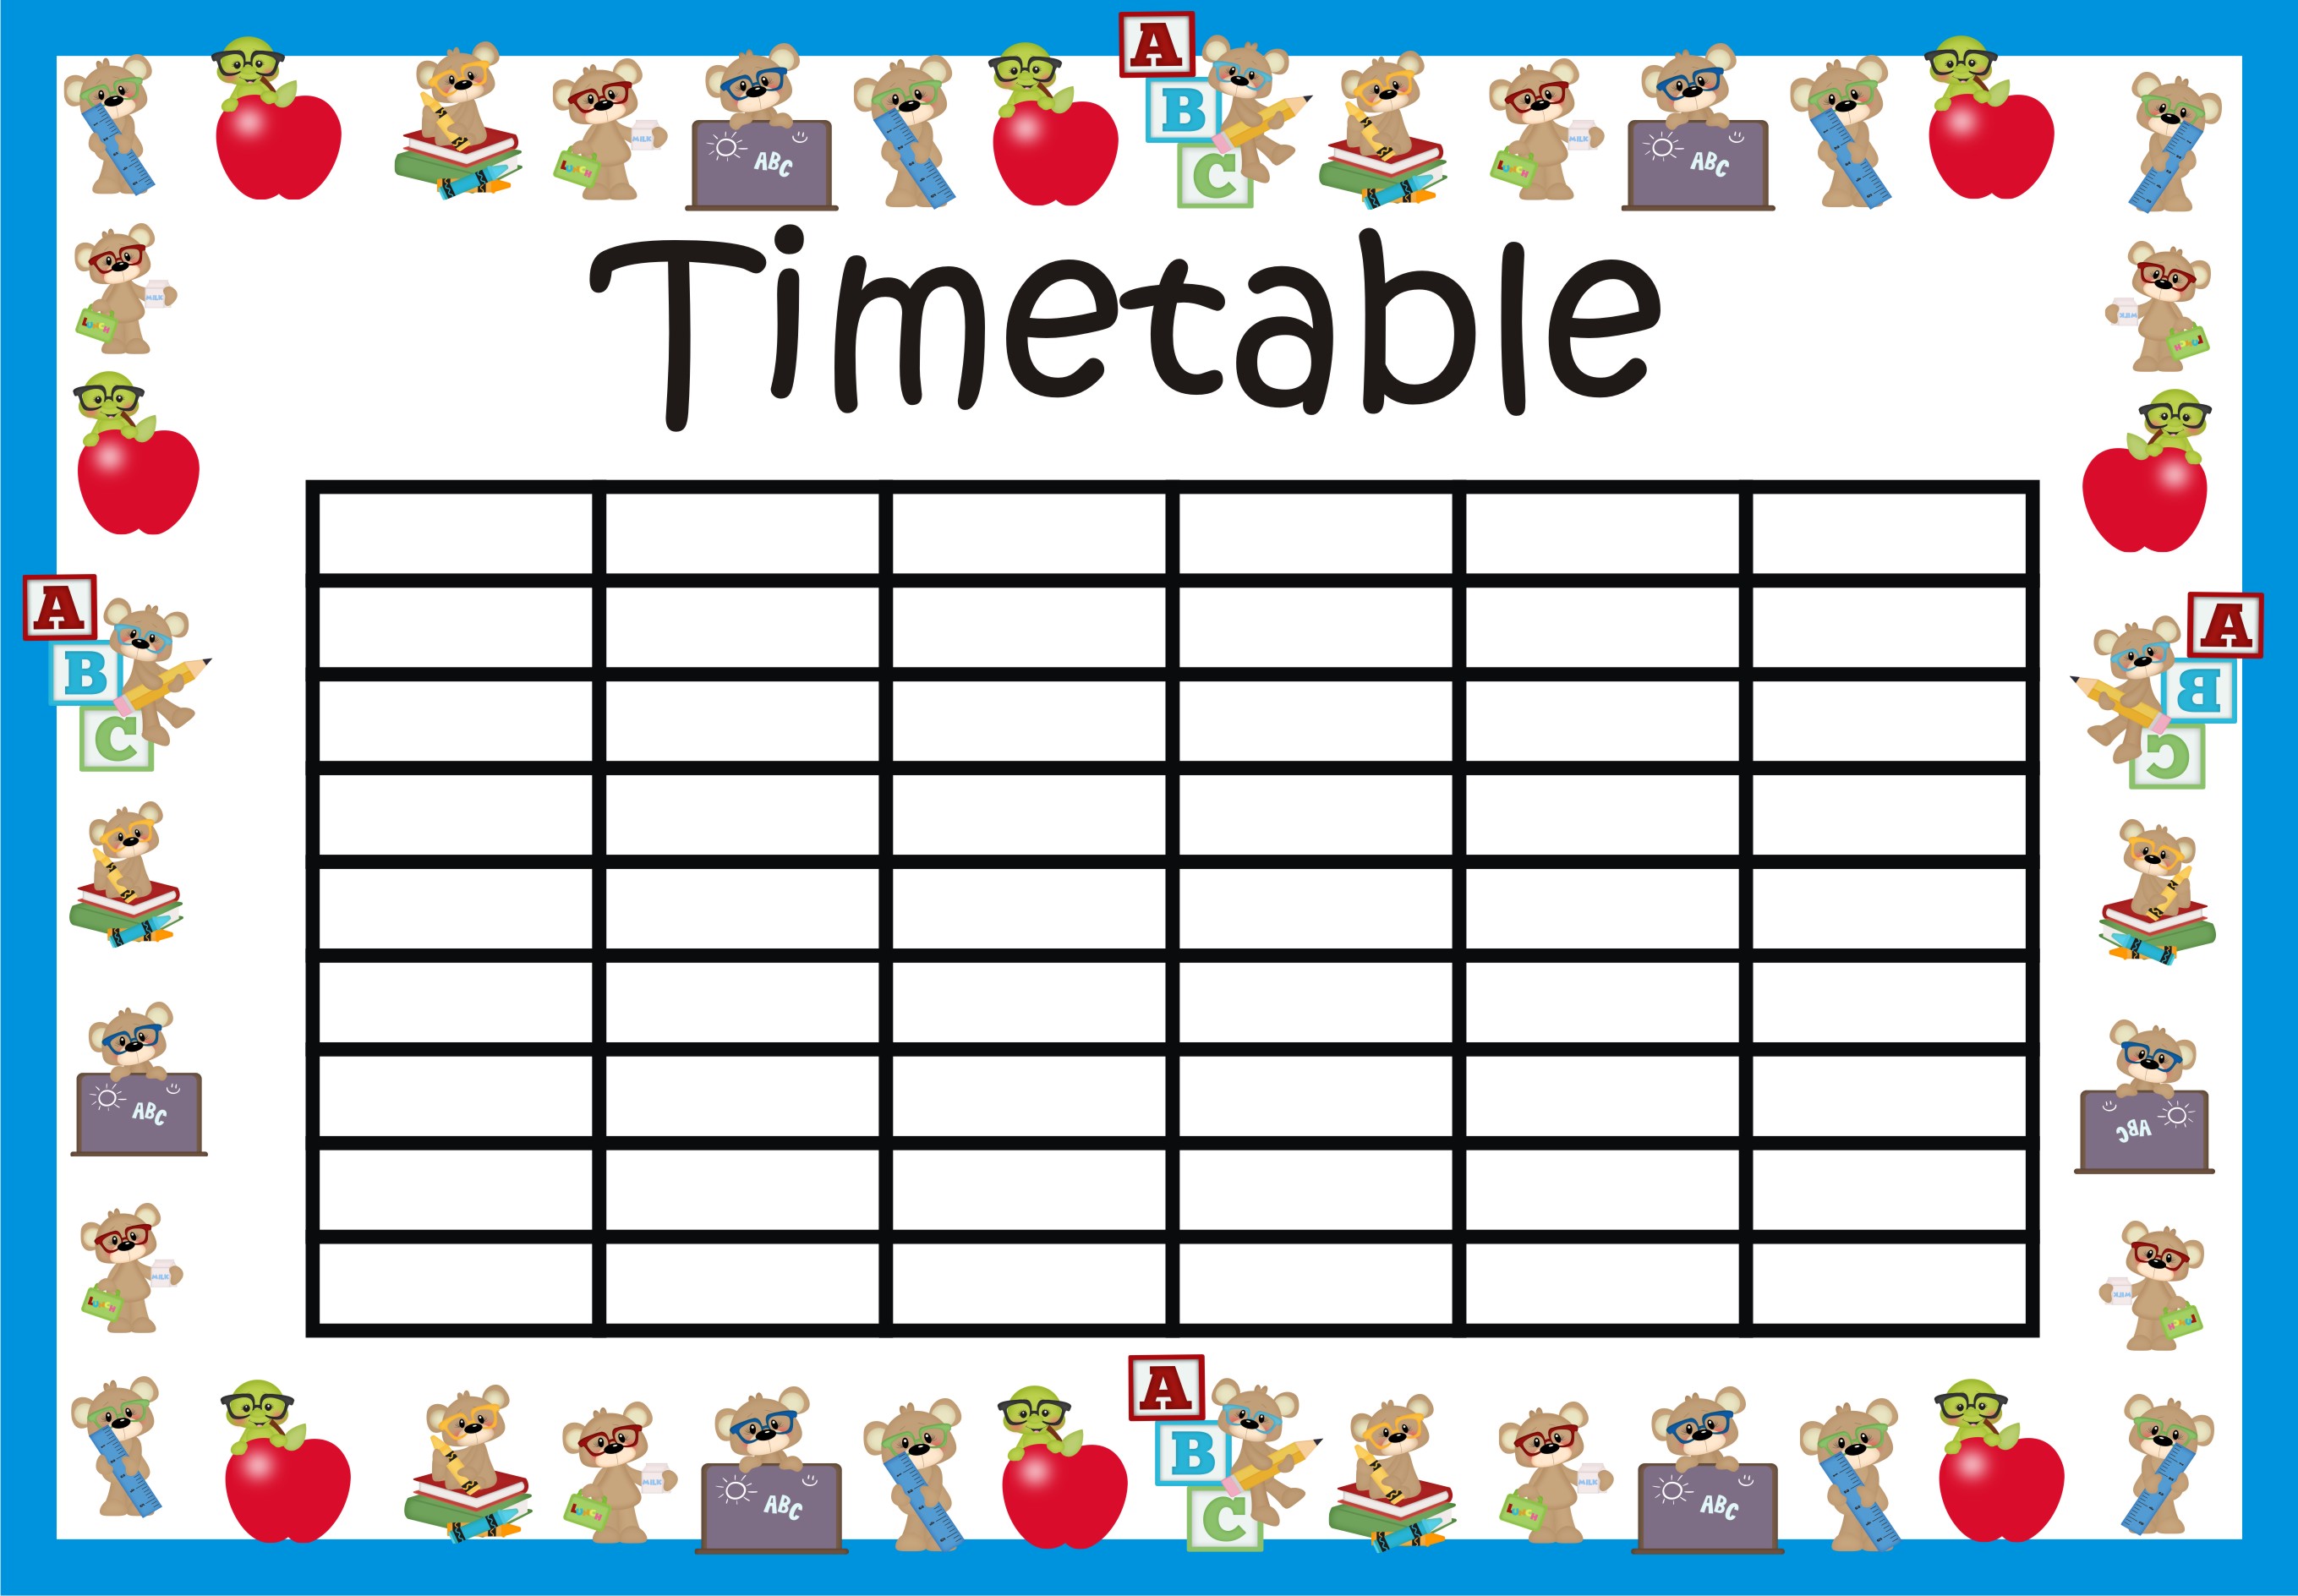 School Timetable - Class Timetable - Editable - Teachers Help Teachers.